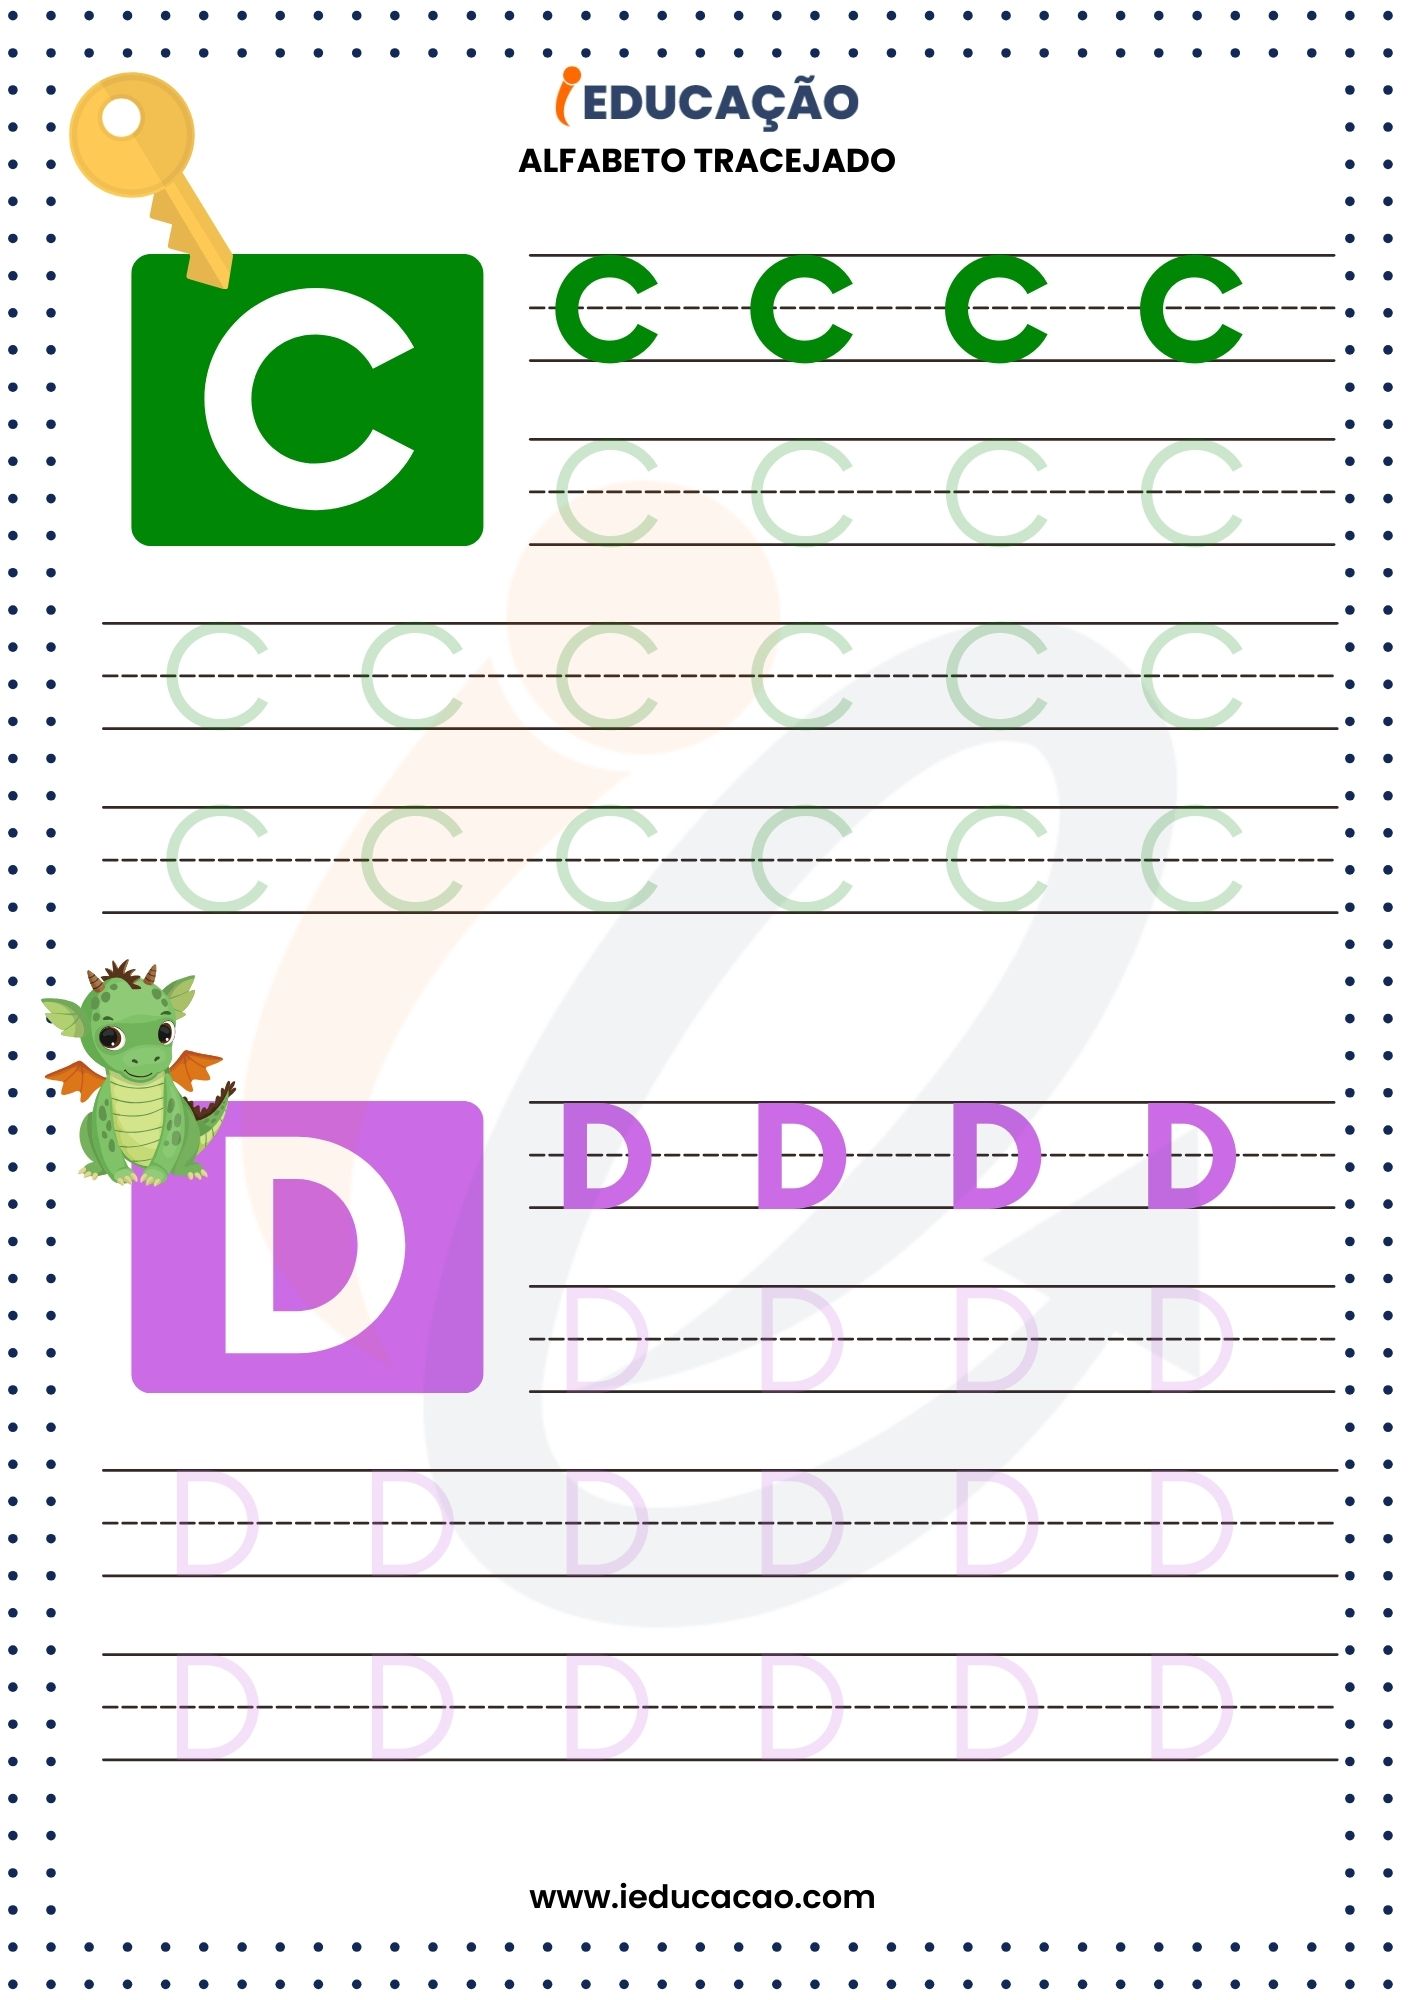 Alfabeto Tracejado C e D